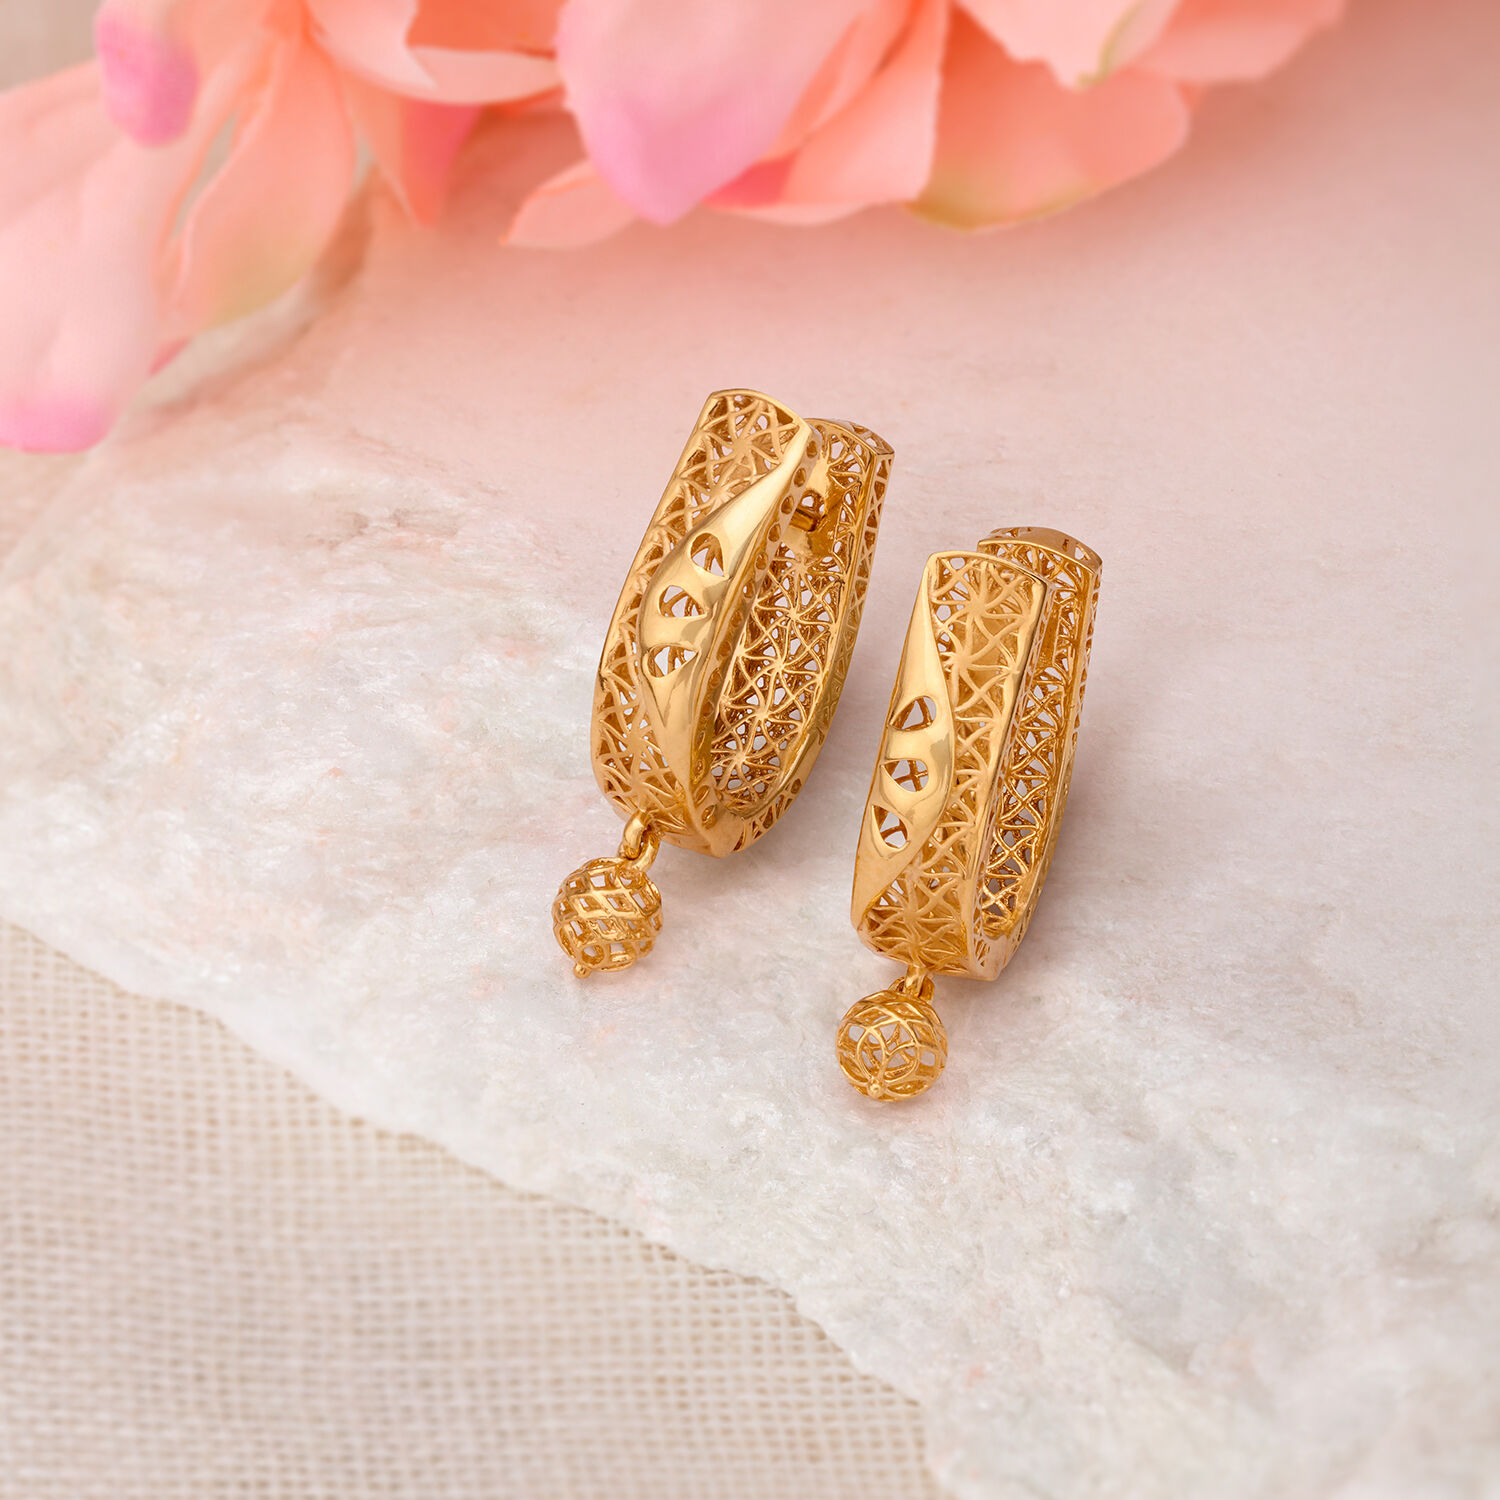 Shop Latest Daily Wear Gold Earrings Designs in Dubai